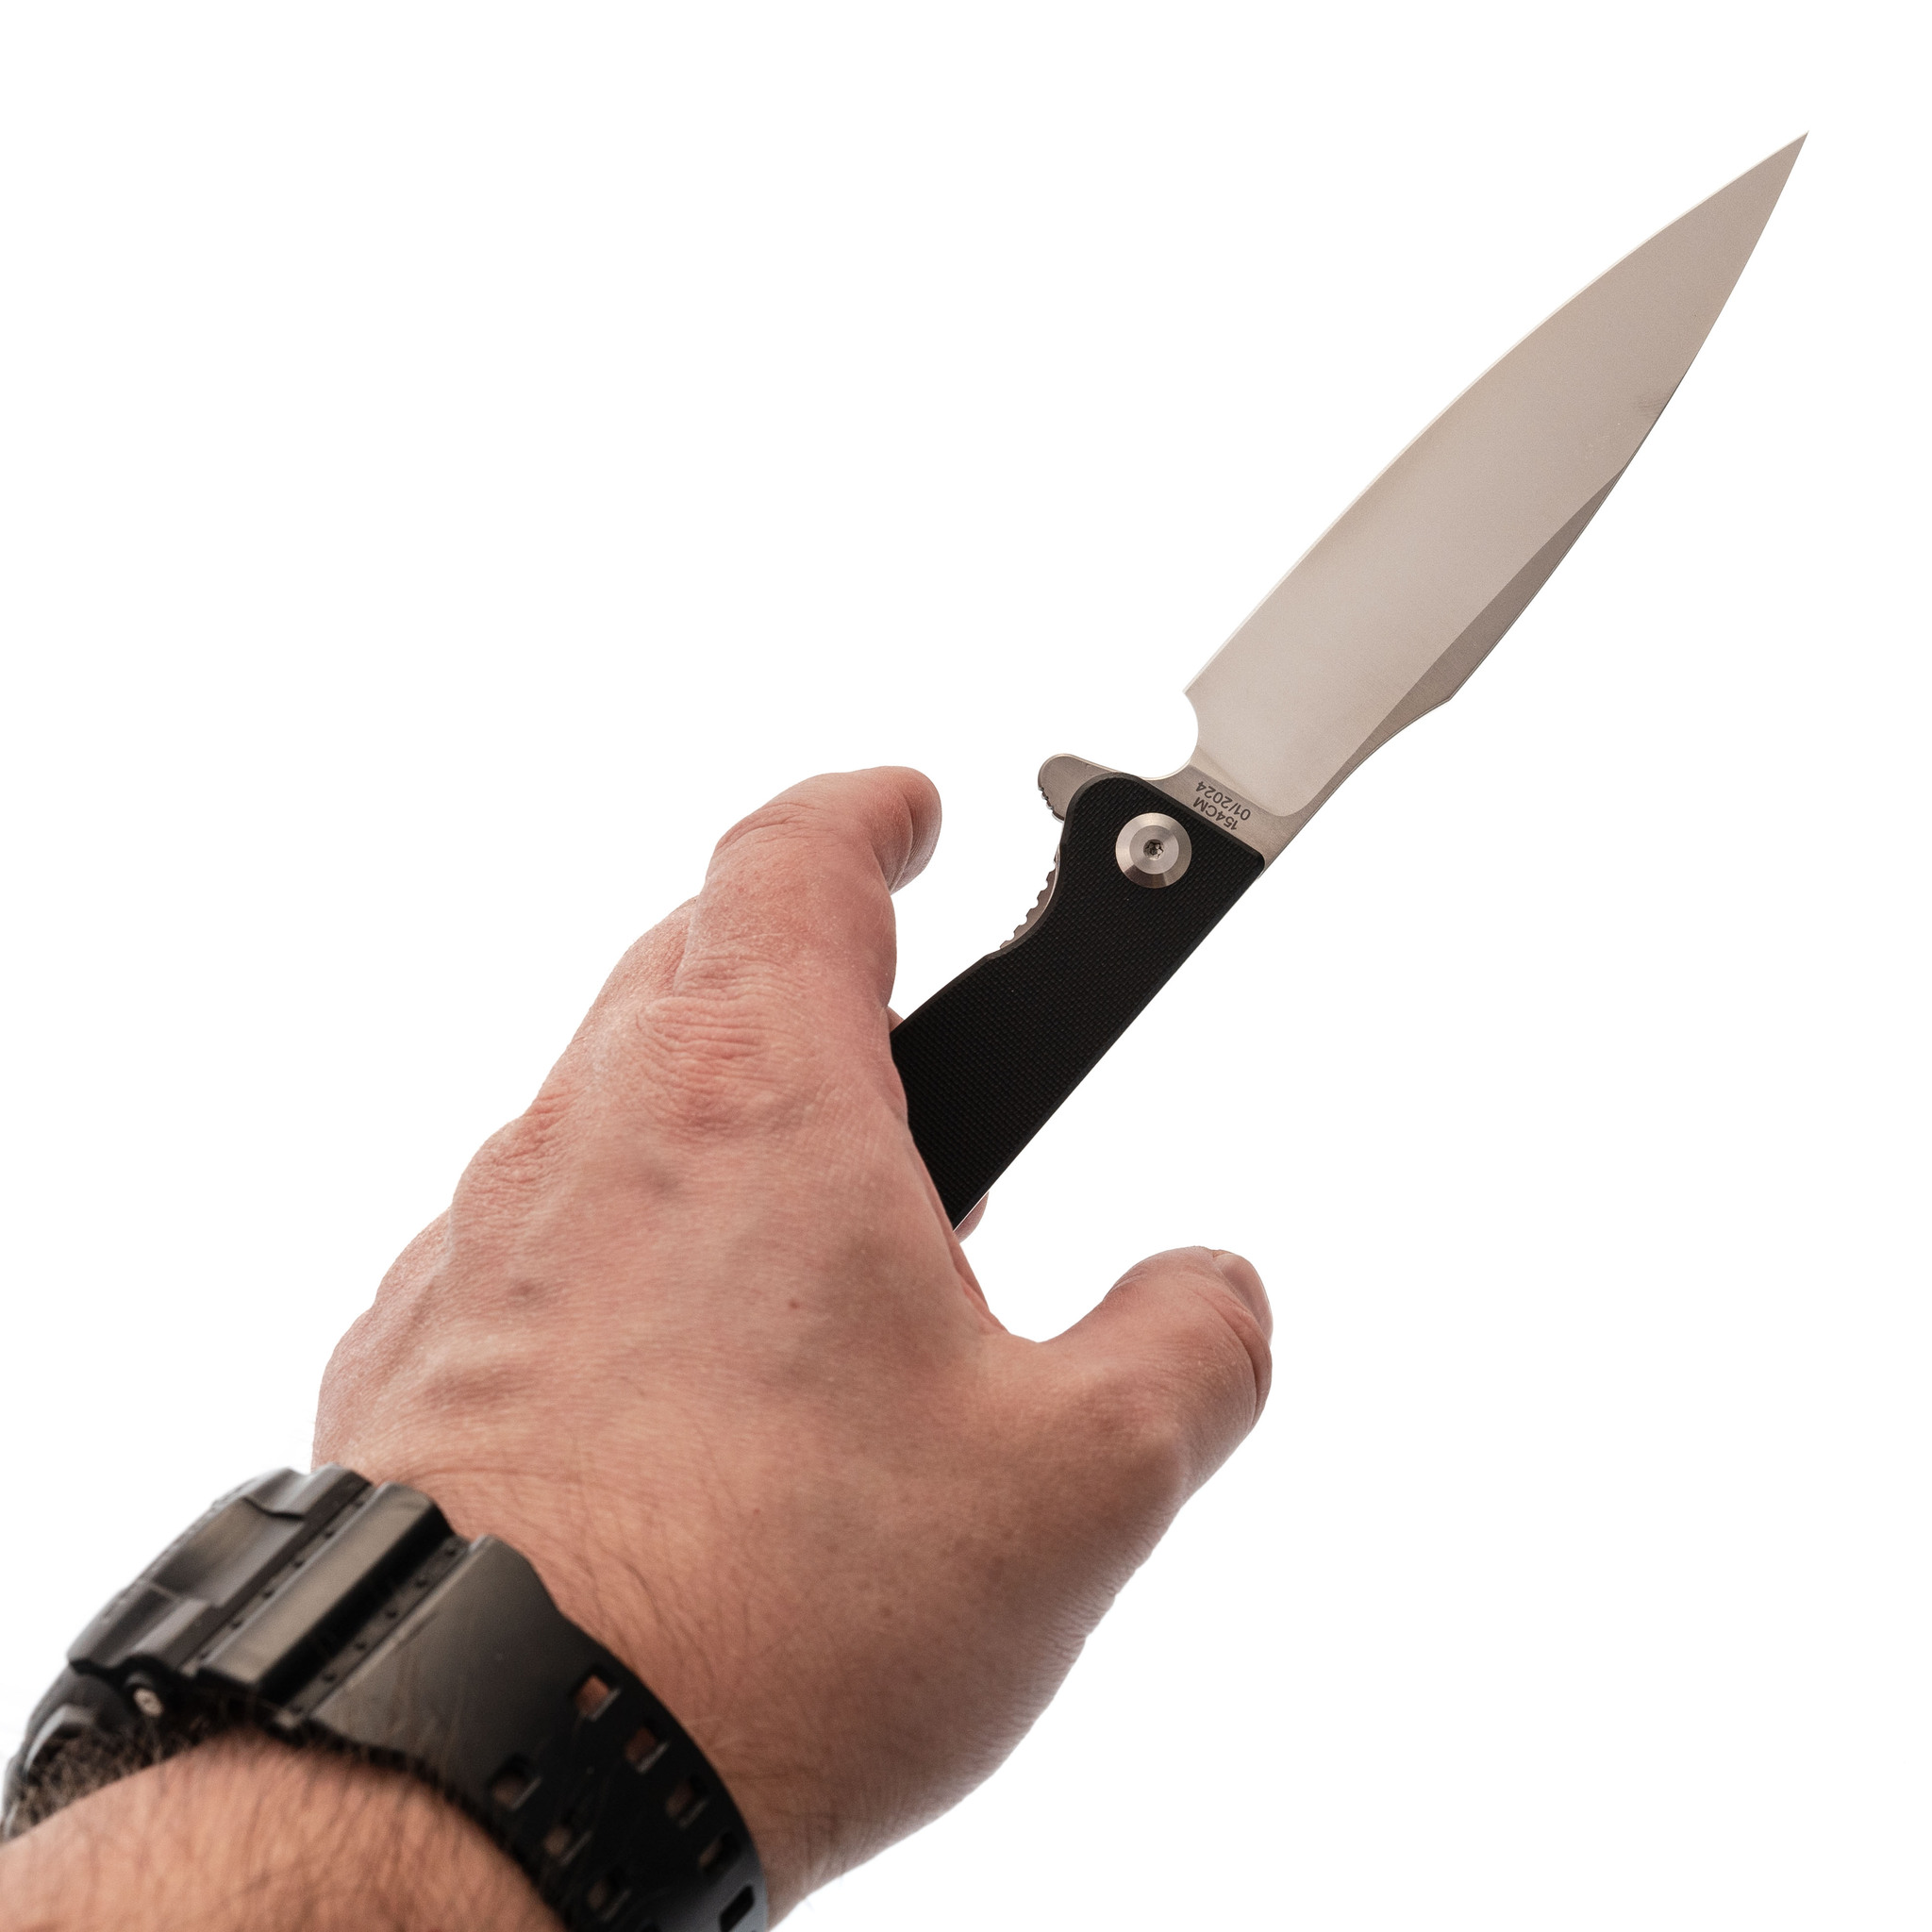 Складной нож Daggerr Condor Black Satin, сталь 154CM, рукоять G10 - фото 8